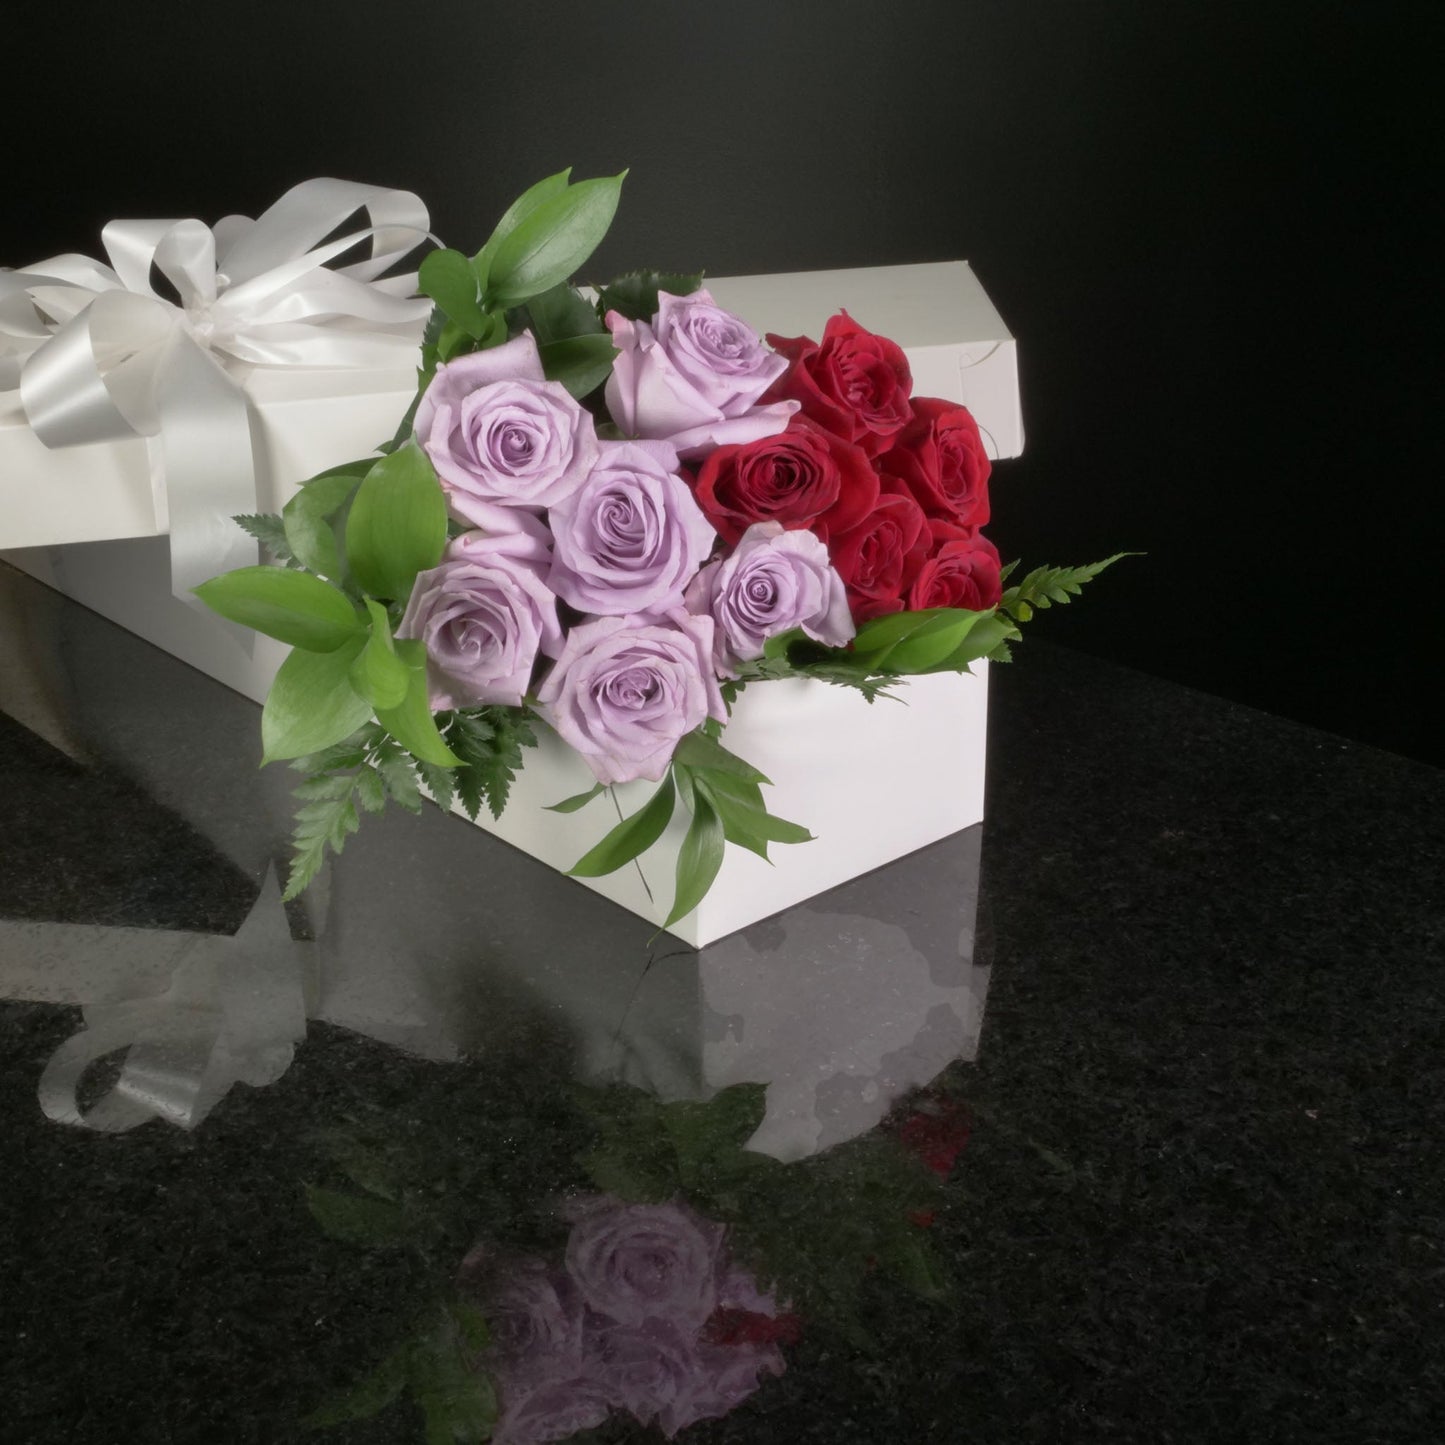  12 Roses / Boxed / Basic